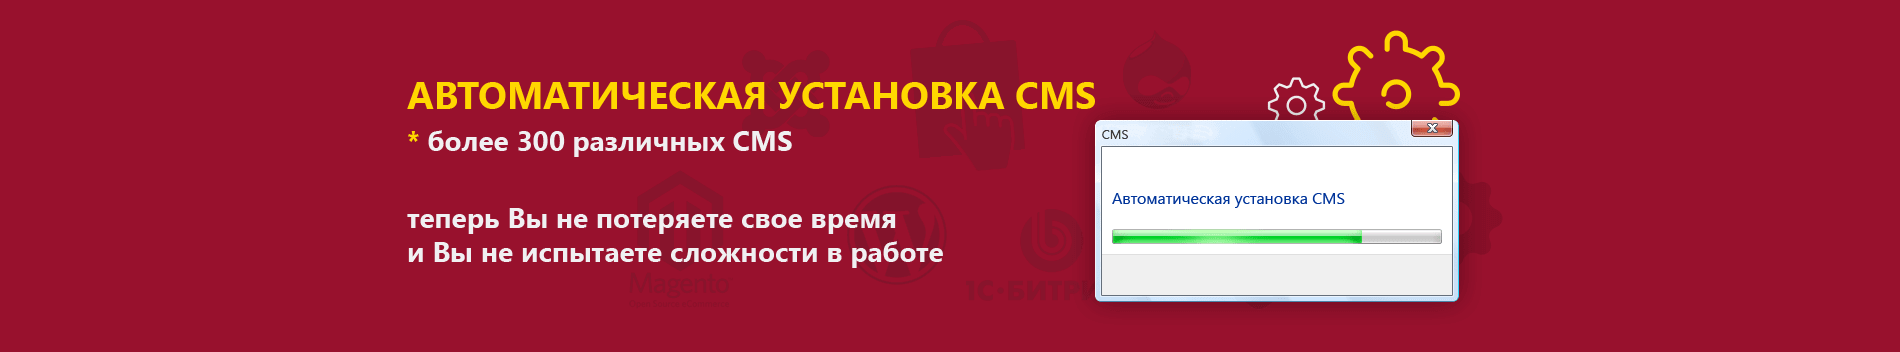 Автоматическая установка CMS Zhost